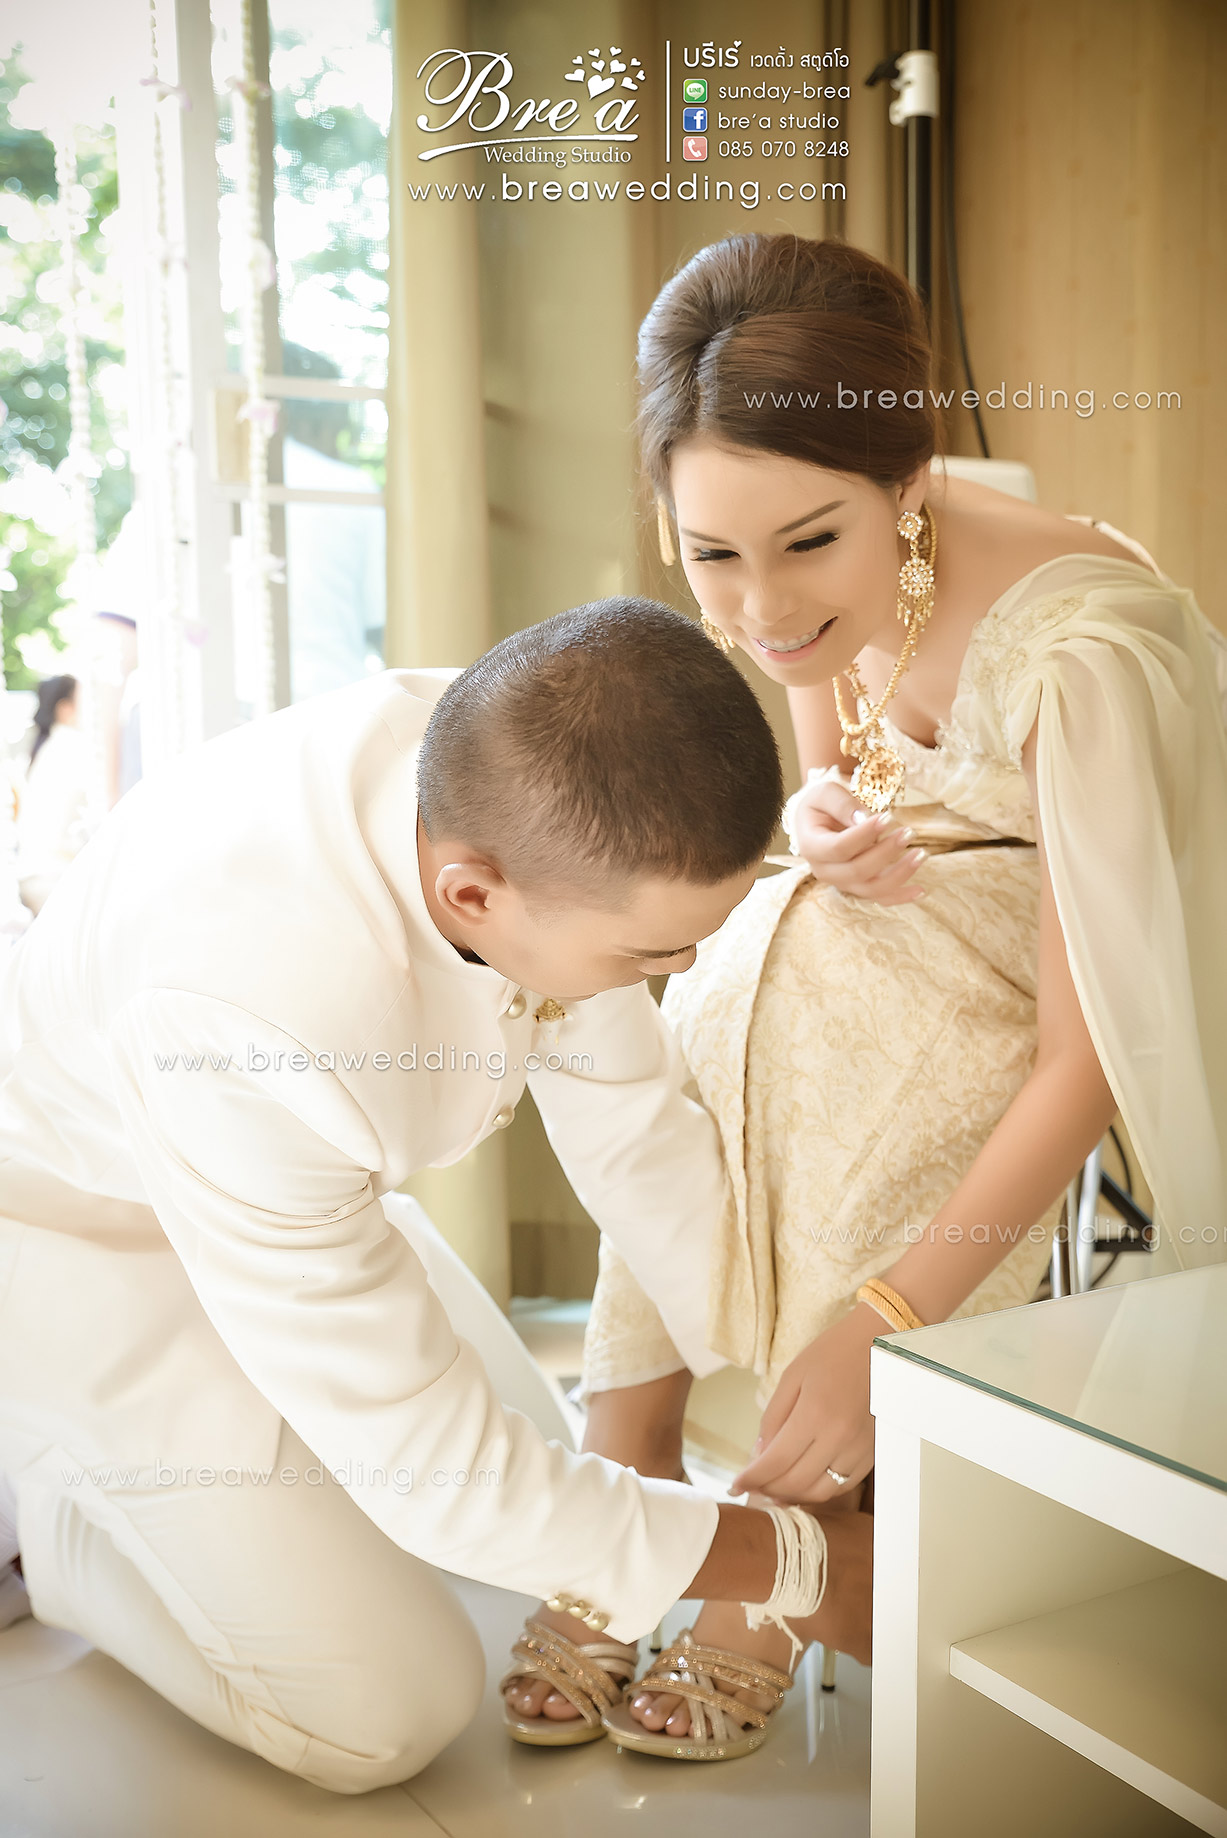 ถ่ายรูปพิธีแต่งงาน กรุงเทพ นนทบุรี 